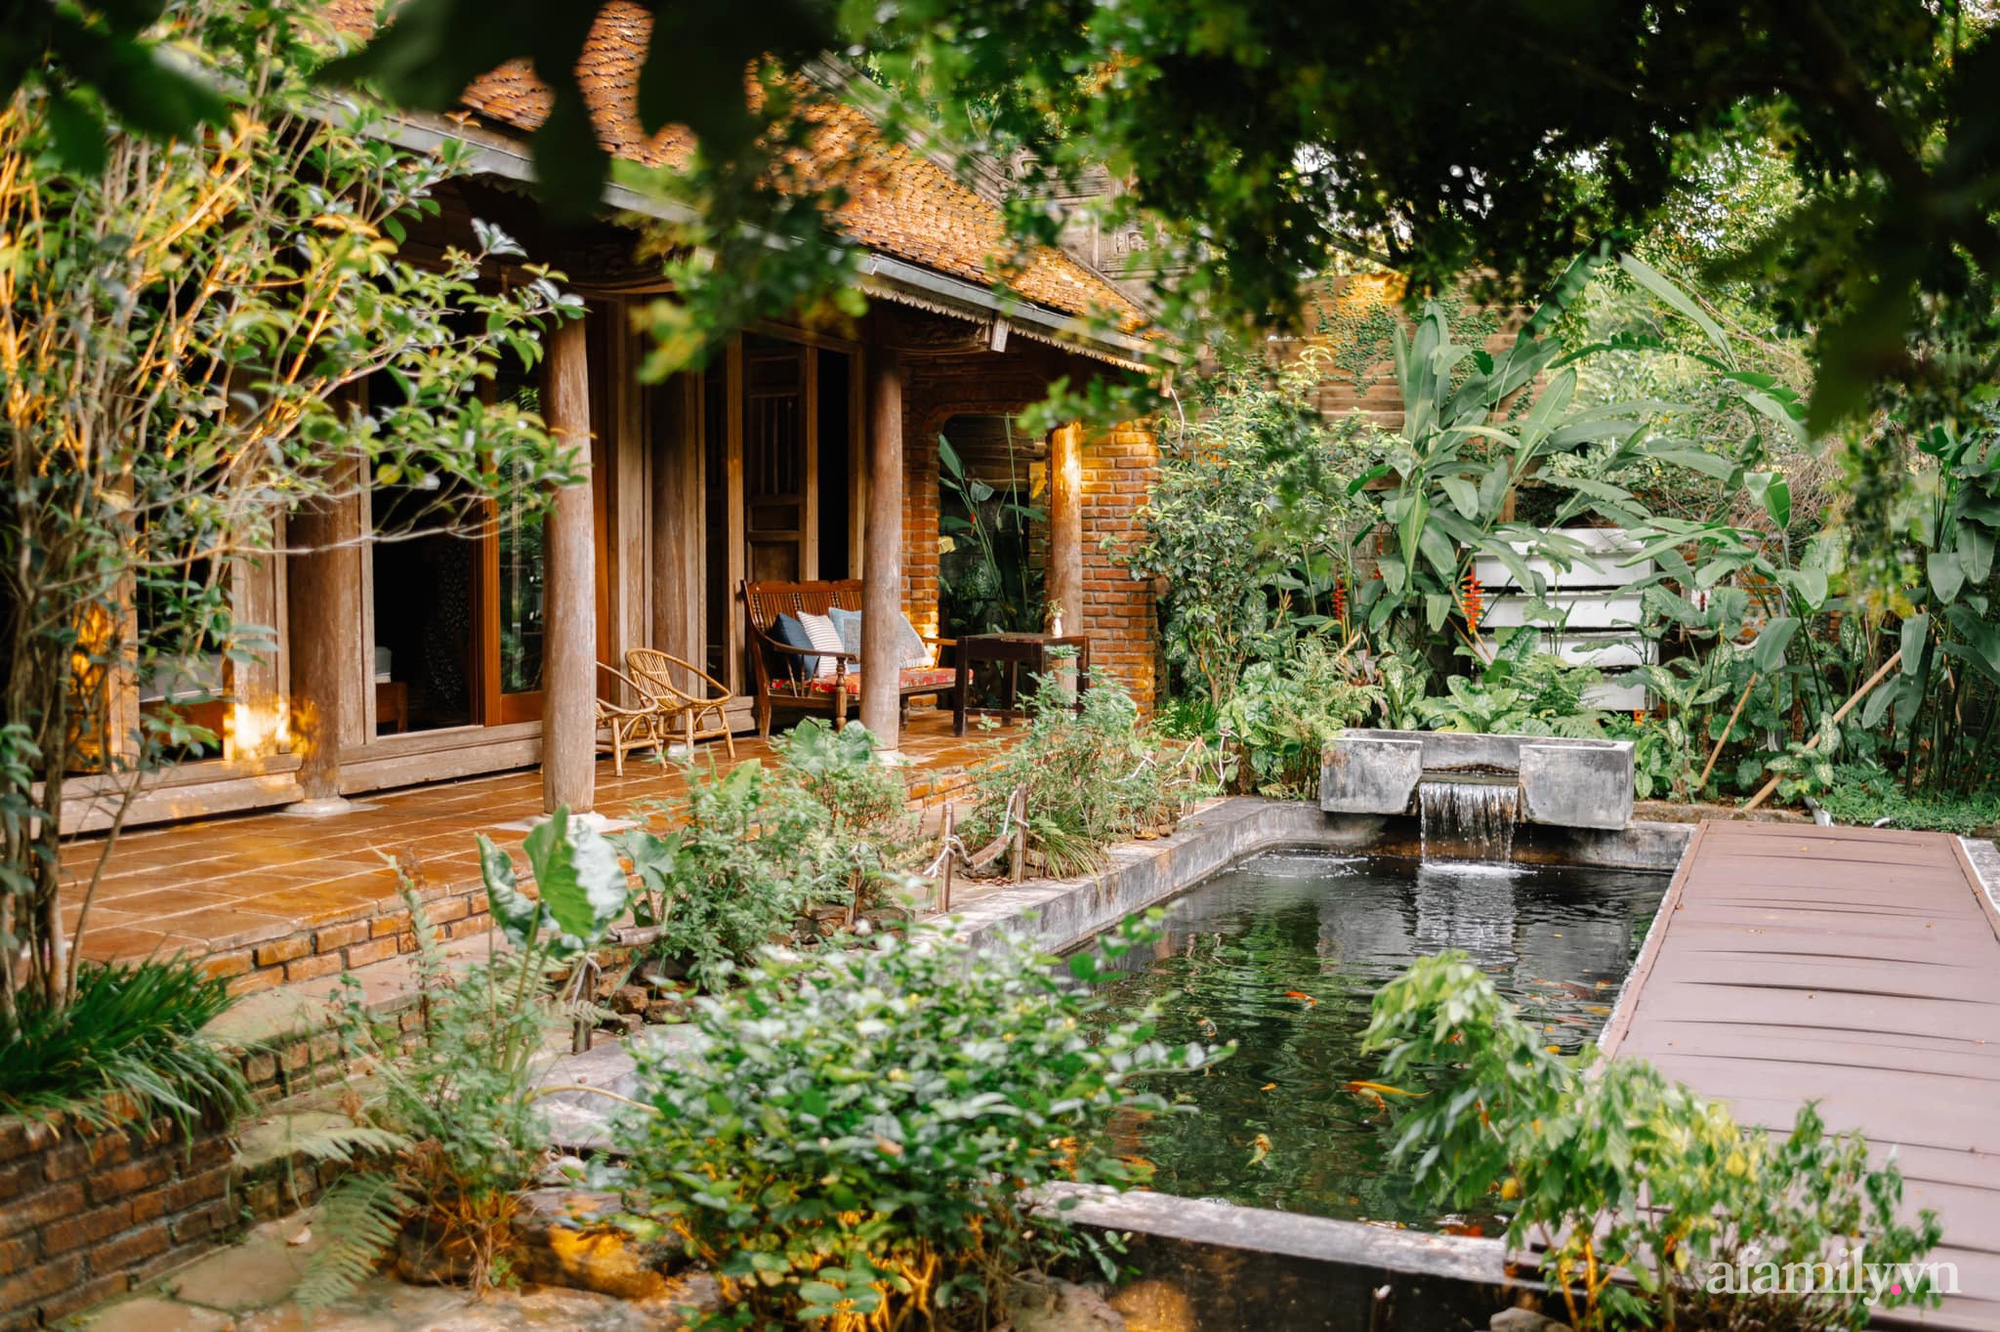 Cuộc sống yên bình trong ngôi nhà nhỏ cùng khu vườn xanh mát bóng cây ở ngoại thành Hà Nội - Ảnh 2.